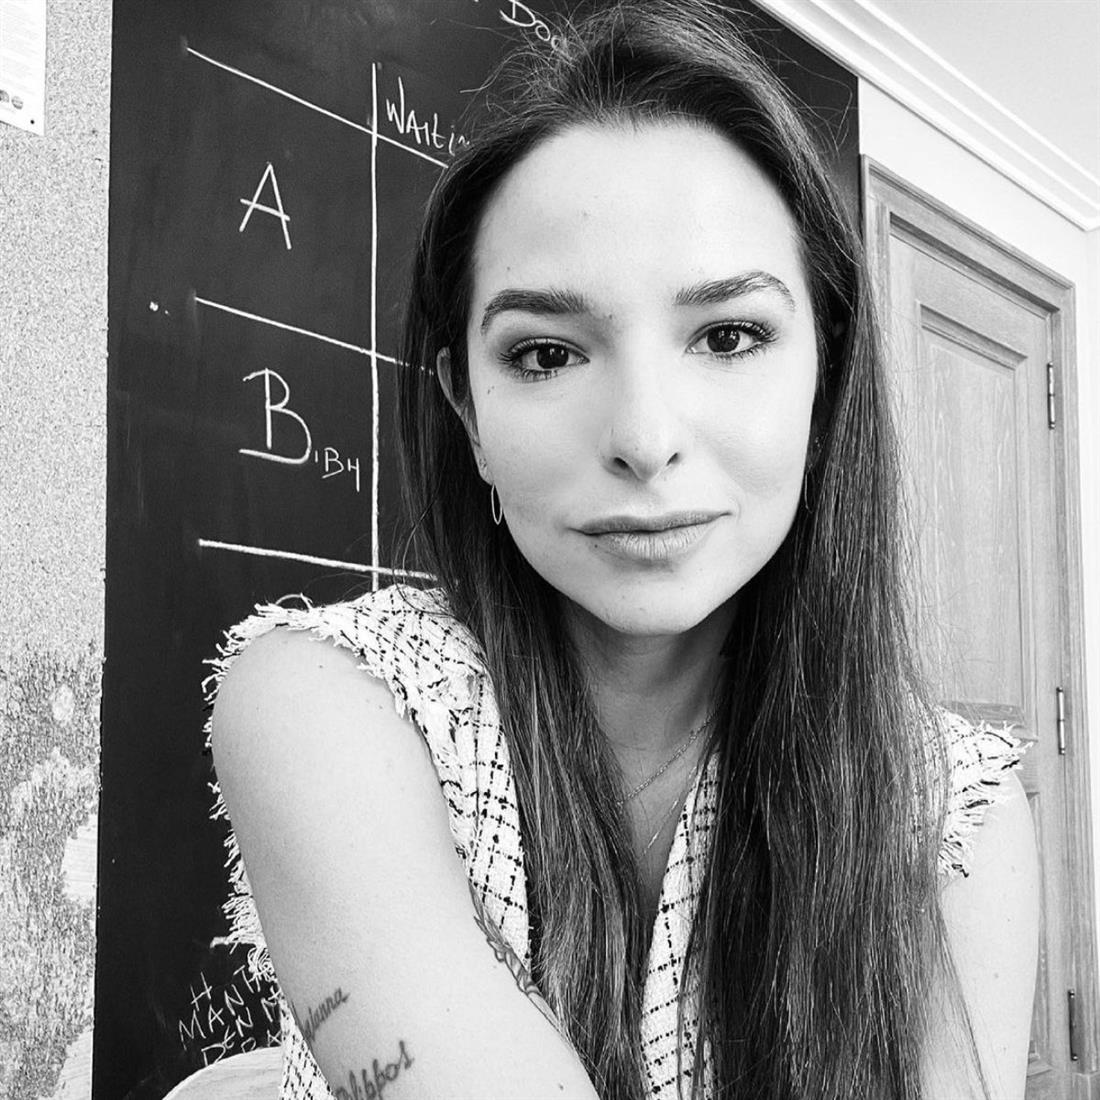 Εριέττα Κούρκουλου: Το δημόσιο ξέσπασμα στα social media - "Έχω φρίξει & αηδιάσει με αυτές τις εικόνες που βλέπω"